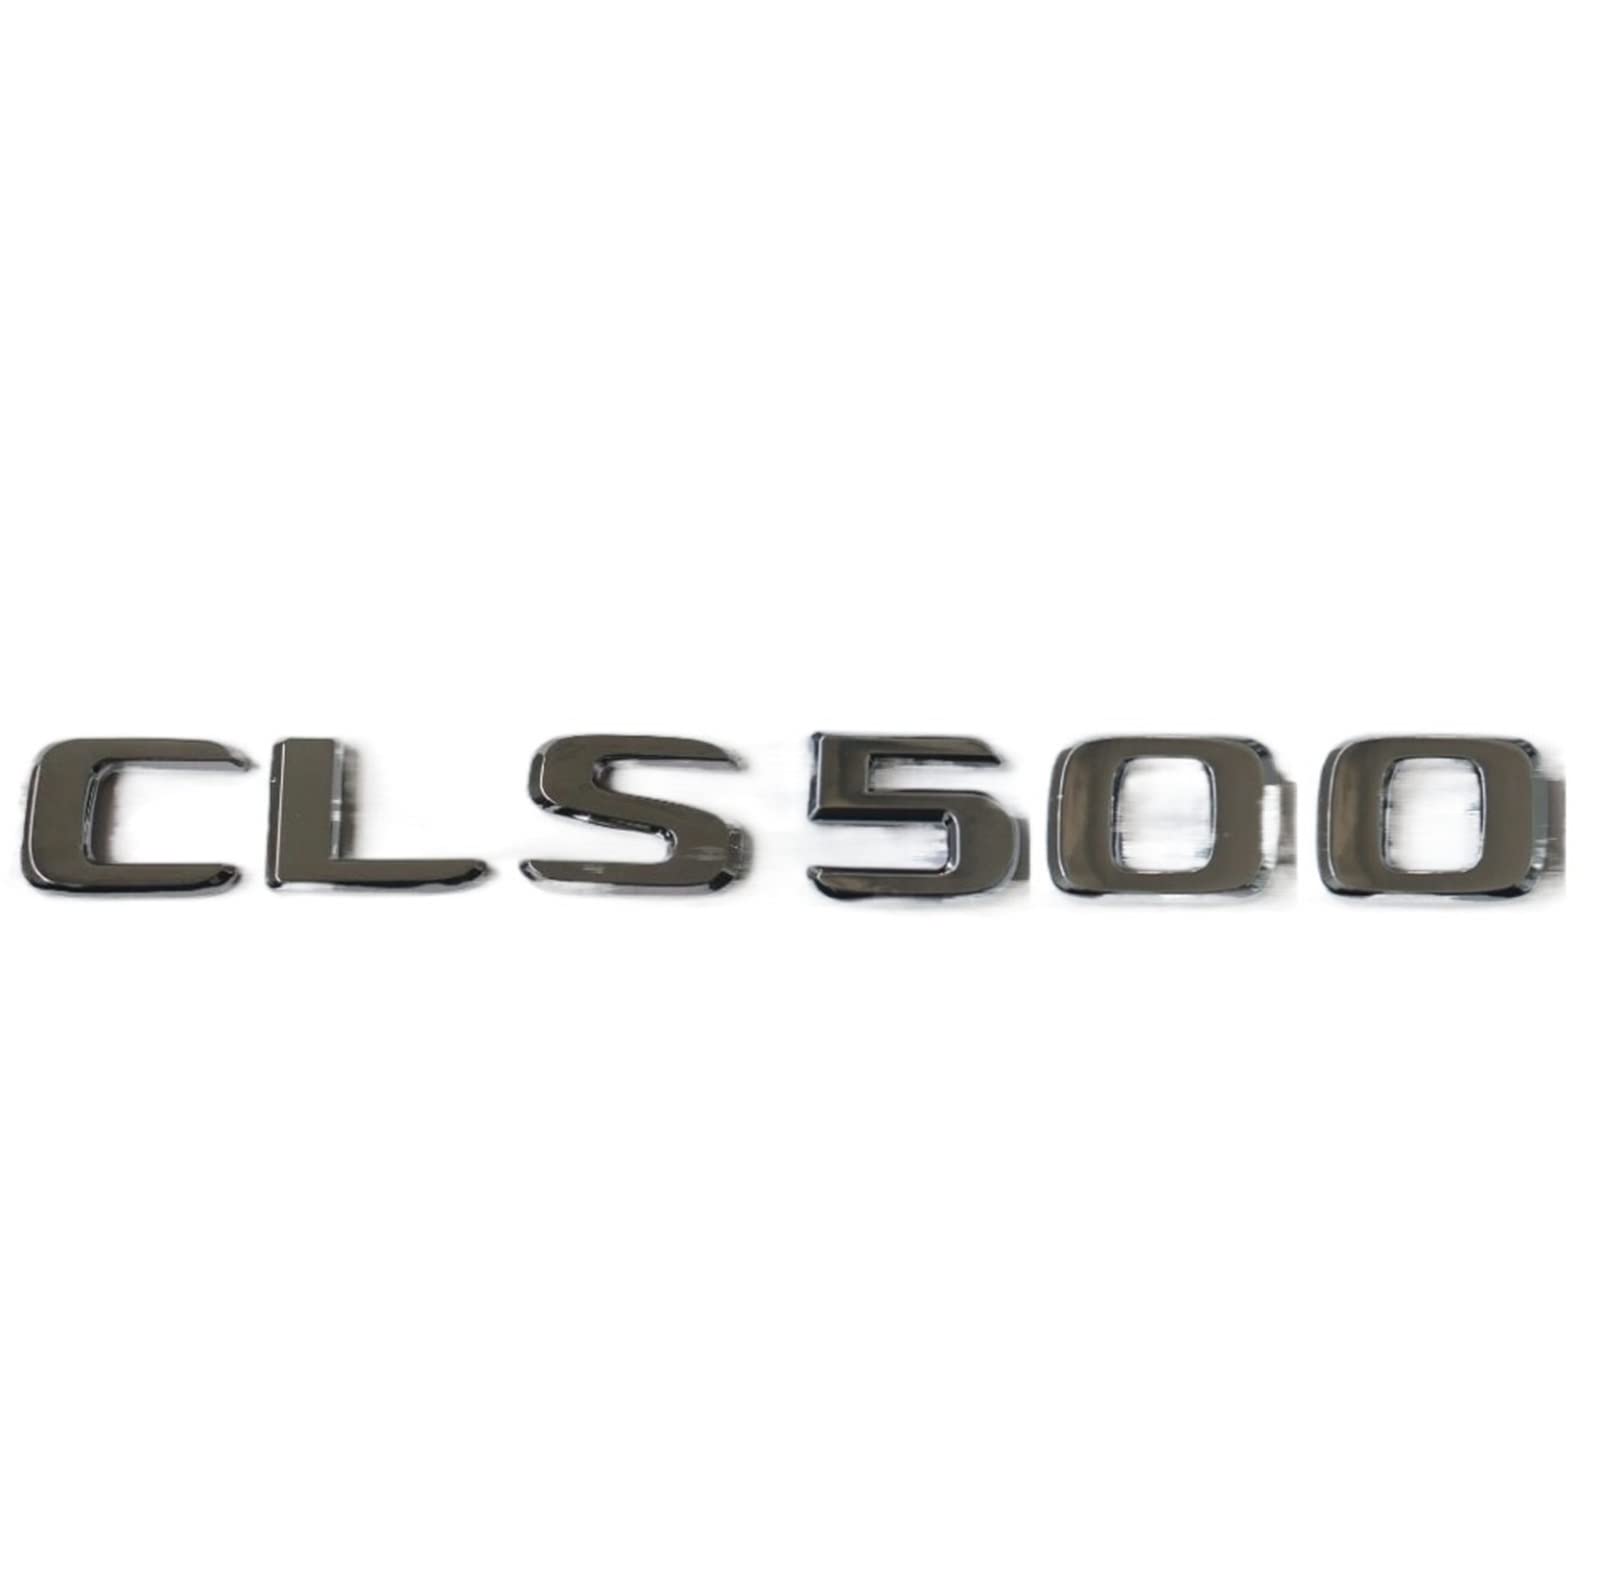 CEVIZ Flachchrom Abs Heckstammbuchstaben Abzeichen Emblem Embleme Aufkleber for Mercedes Benz geeignet CLS Klasse CLS500 2017-2019 von CEVIZ